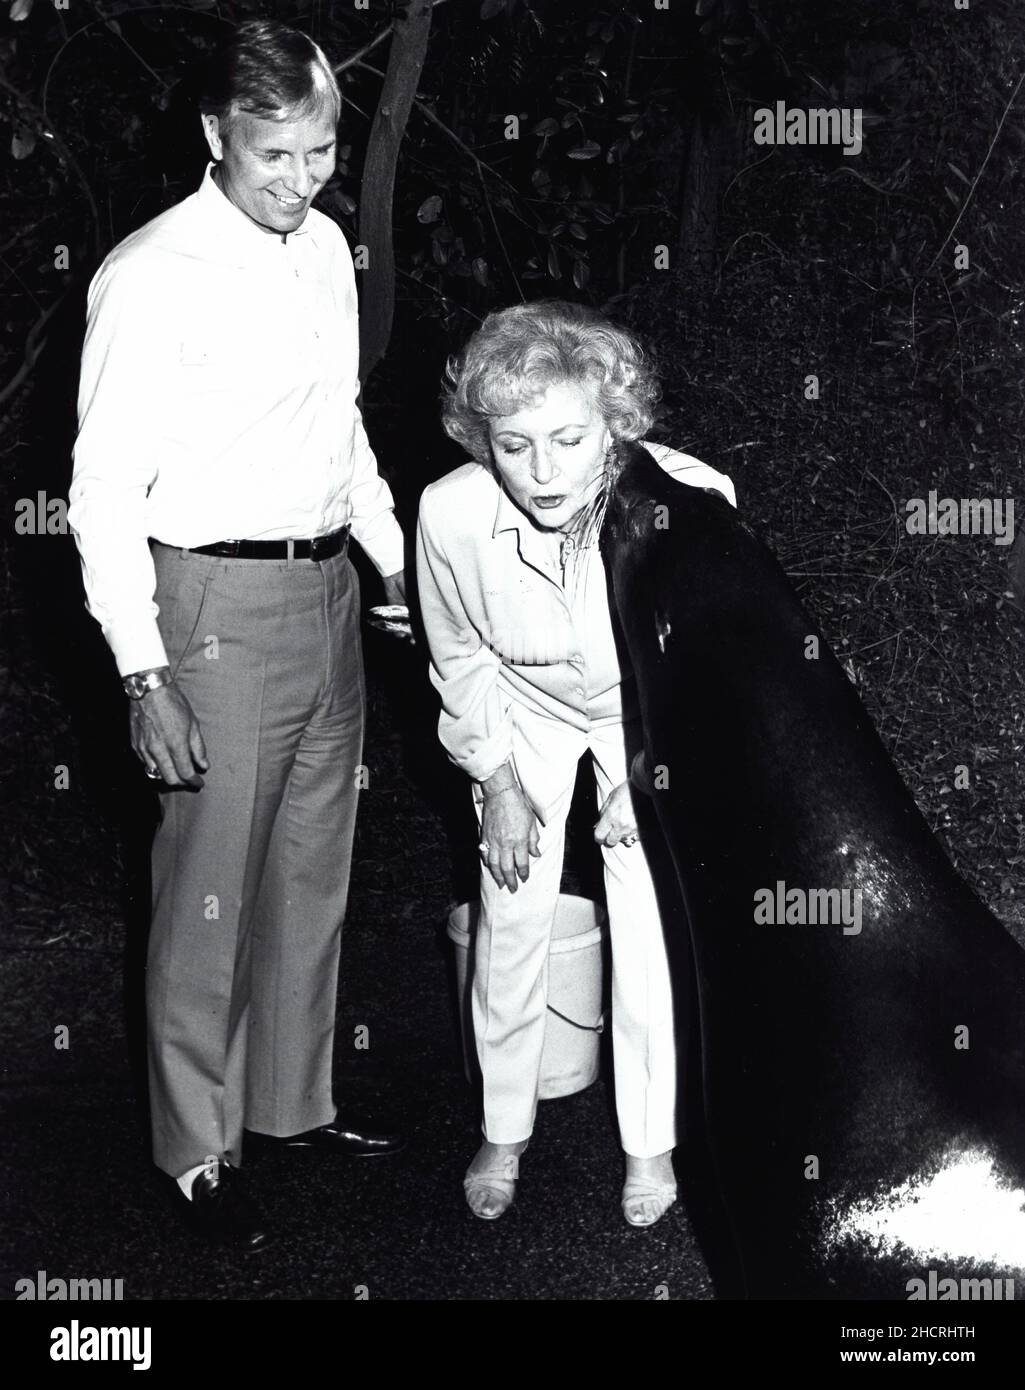 1989 - Los Angles, CA, USA - attrice e amante degli animali, BETTY WHITE ottiene un bacio da un sigillo durante una visita allo Zoo di Los Angeles. (Credit Image: © Globe Photos/ZUMA Wire) Foto Stock